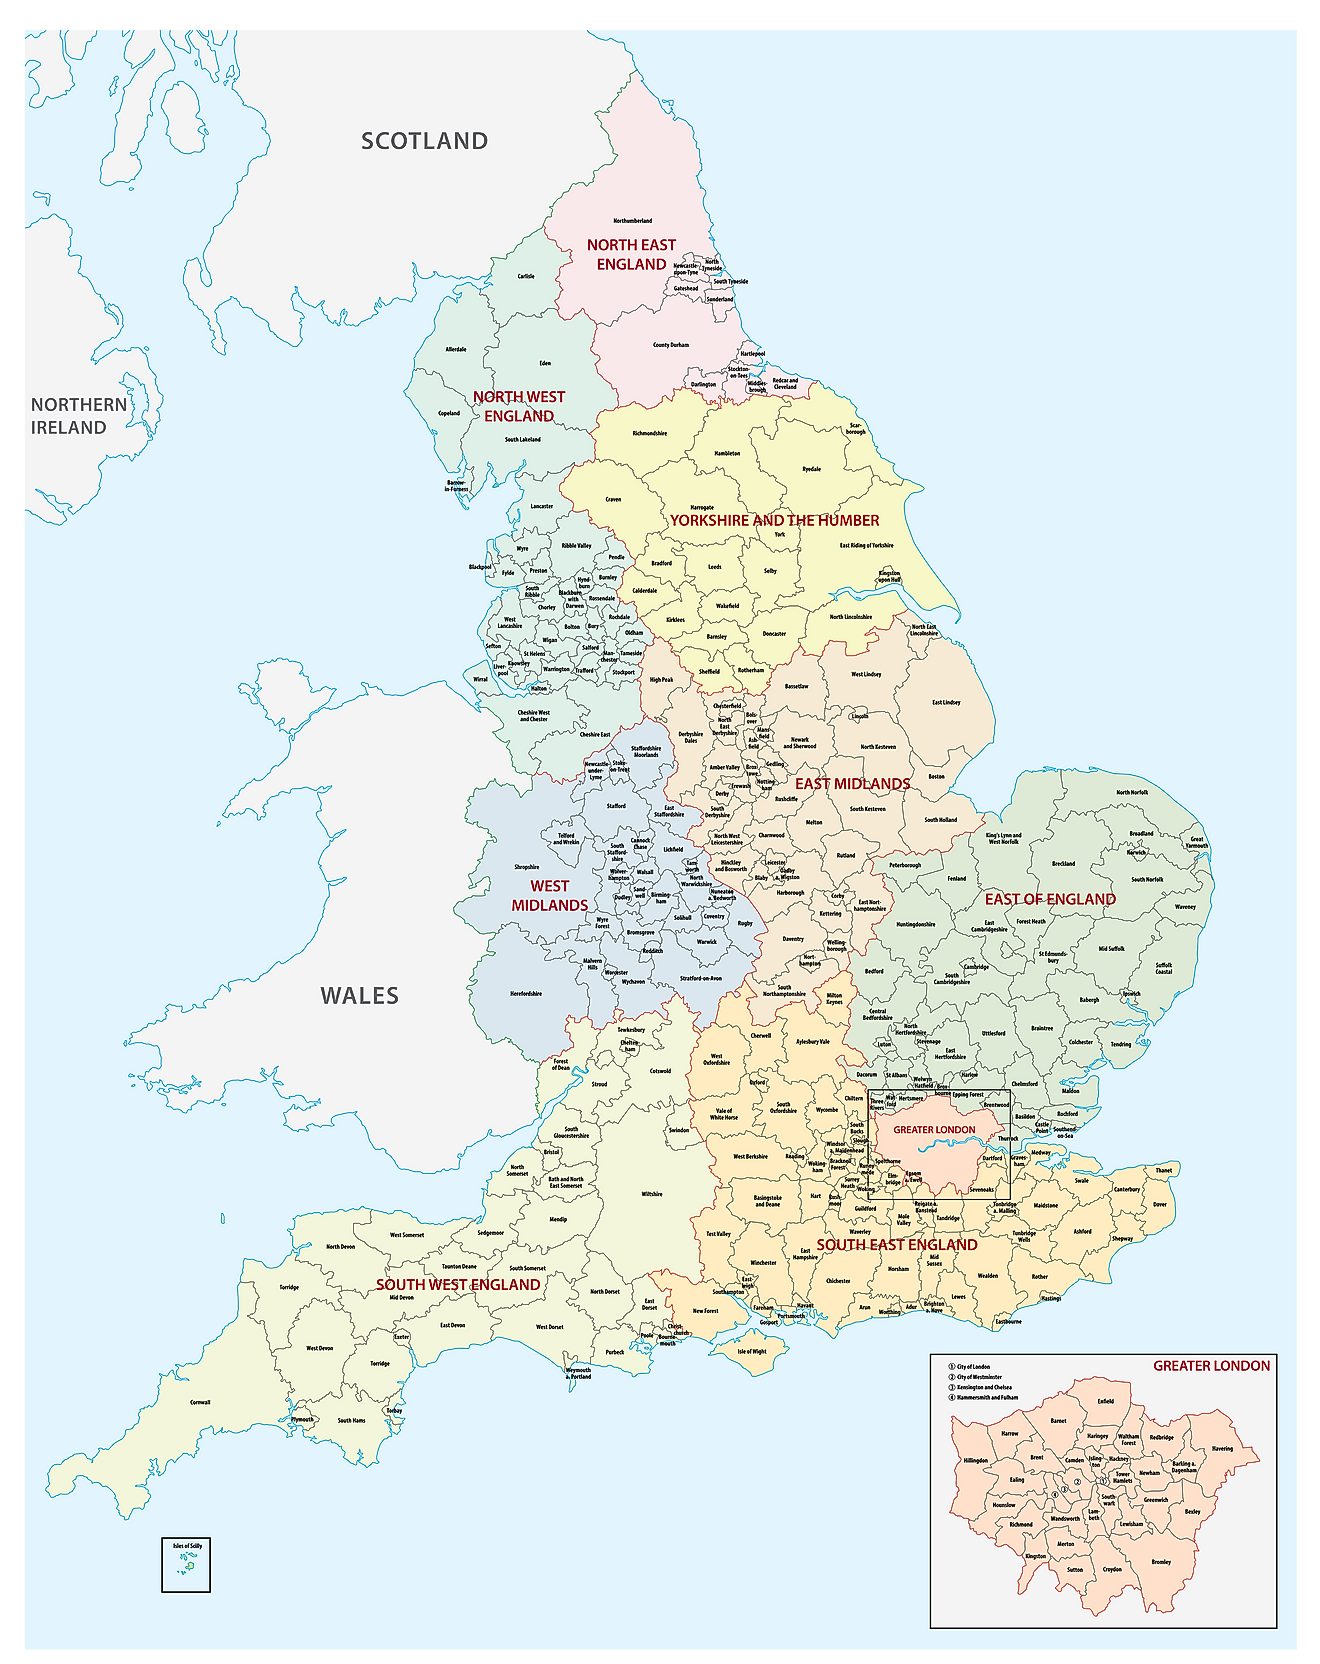 Mapa Administrativo de Inglaterra mostrando sus 9 regiones y su ciudad capital - Londres